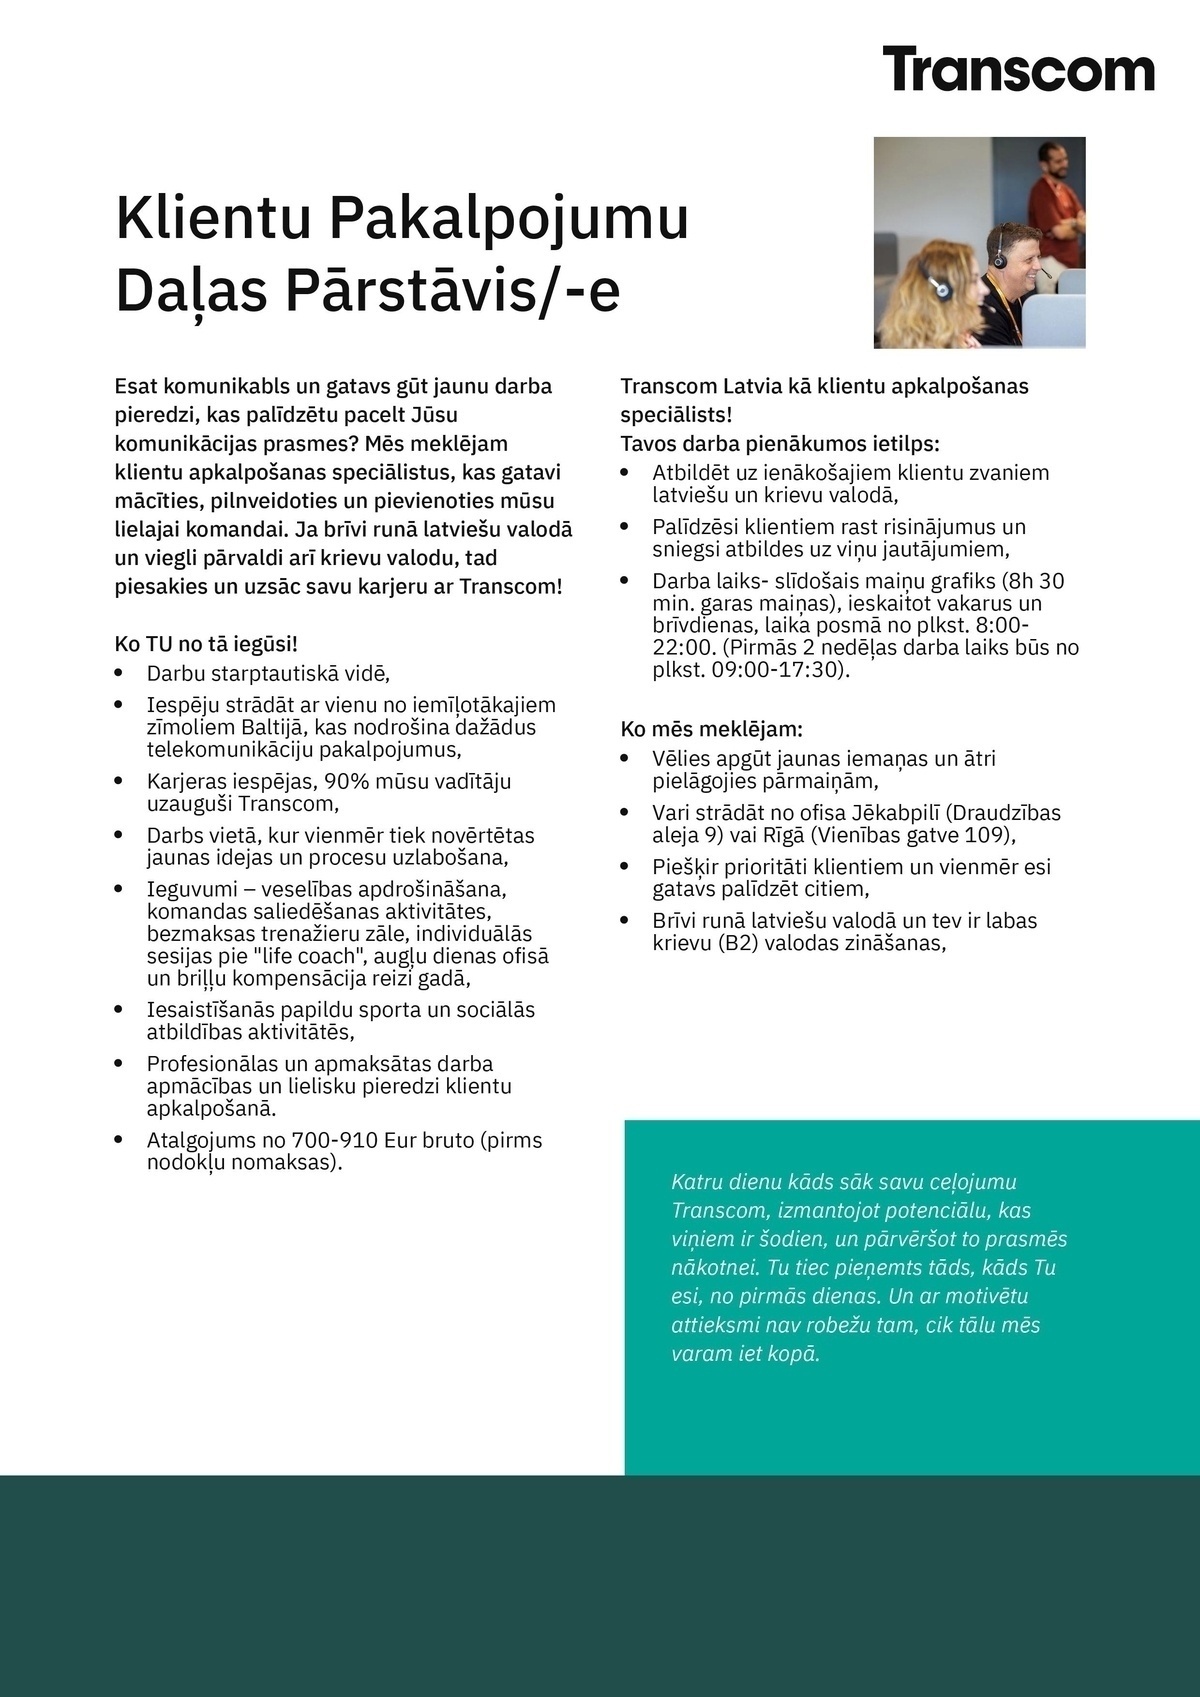 Transcom Worldwide Latvia, SIA Klientu apkalpošanas speciālists/-e Rīgā